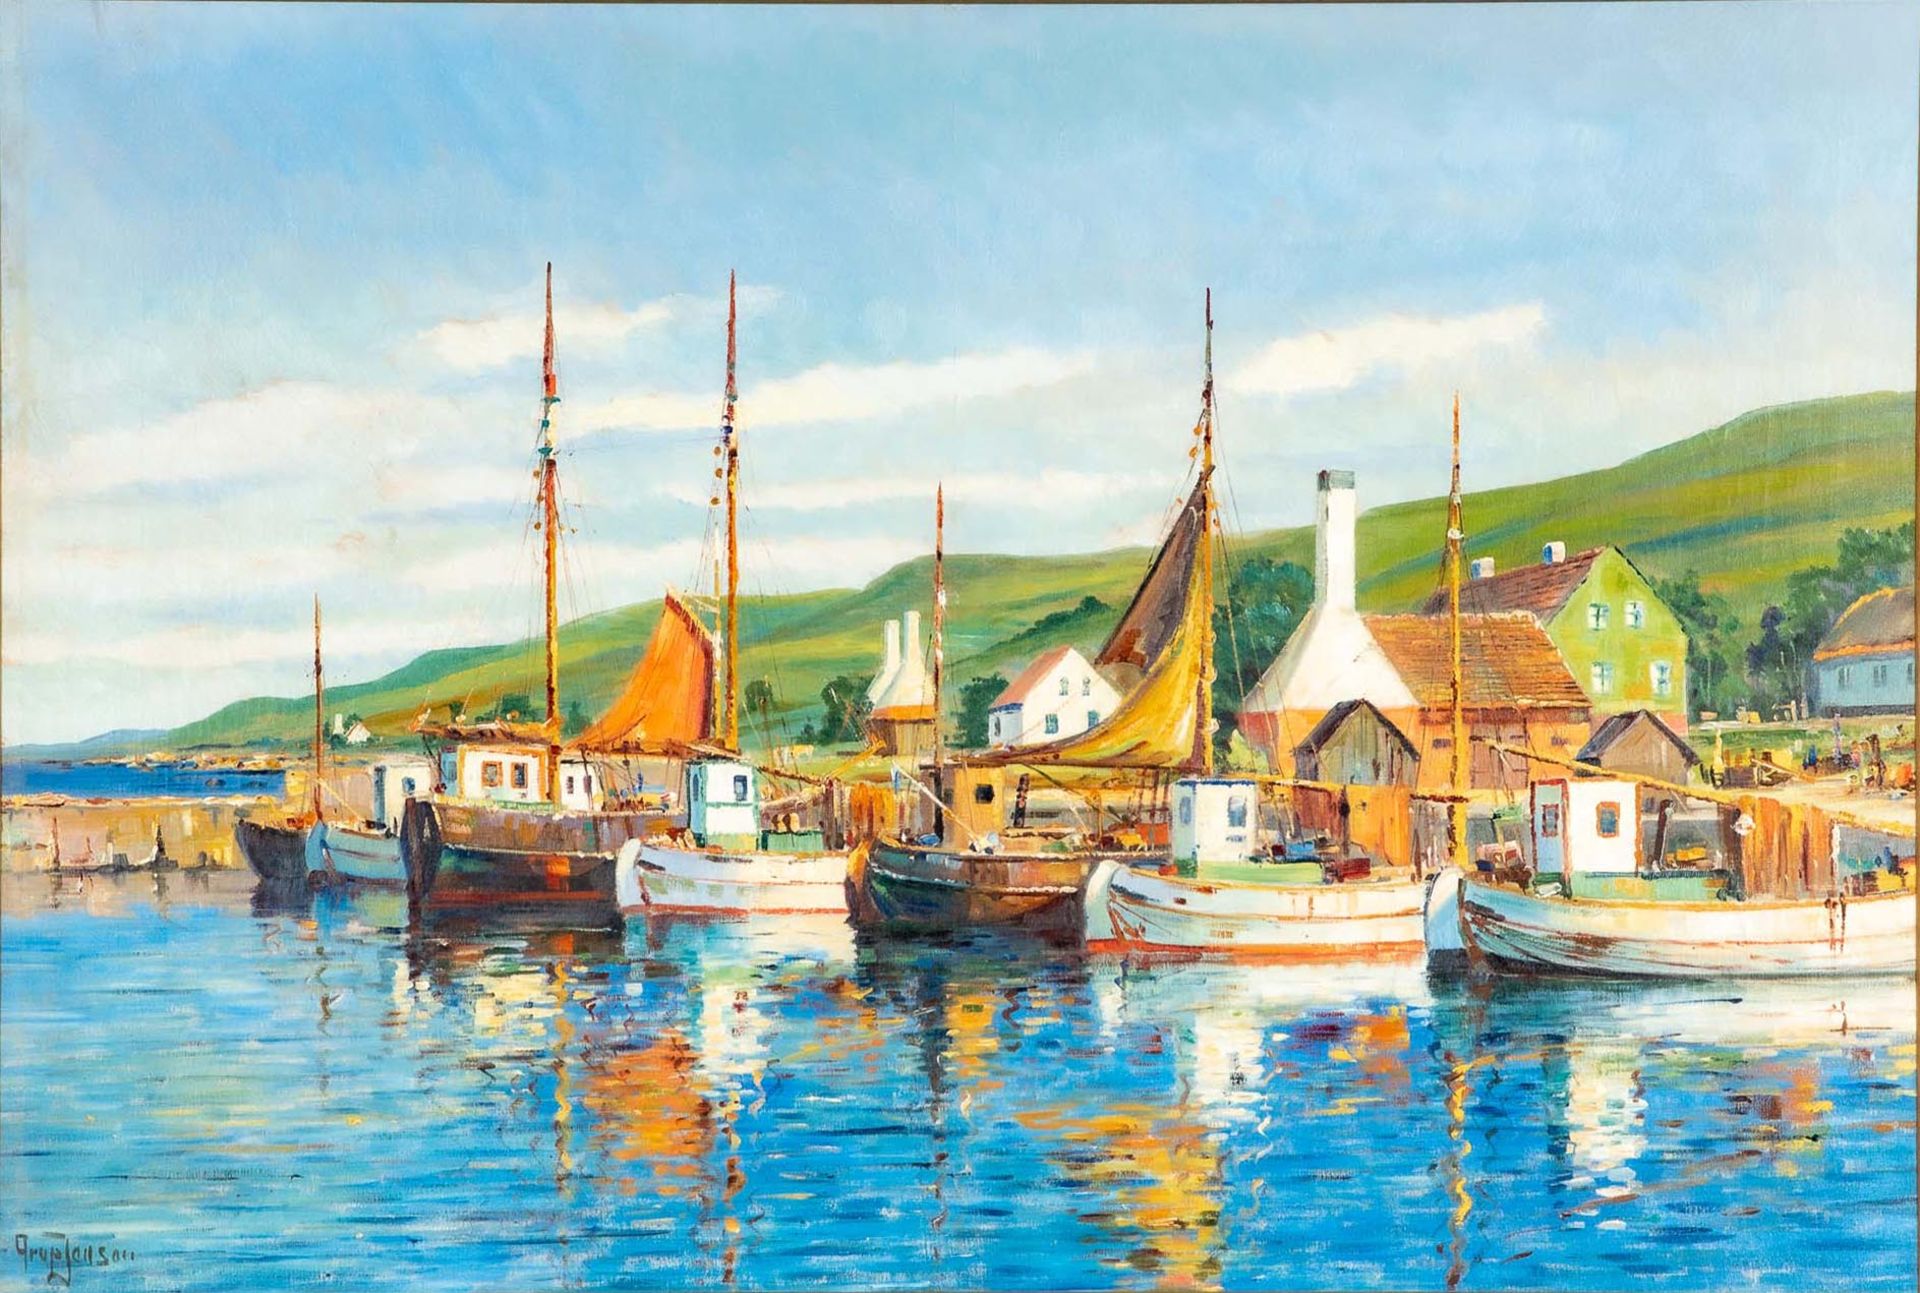 "Farbenfroher dänischer Hafen", großformatiges Gemälde, ca. 88 x 130 cm, unten links signiert: "Aru - Bild 2 aus 8